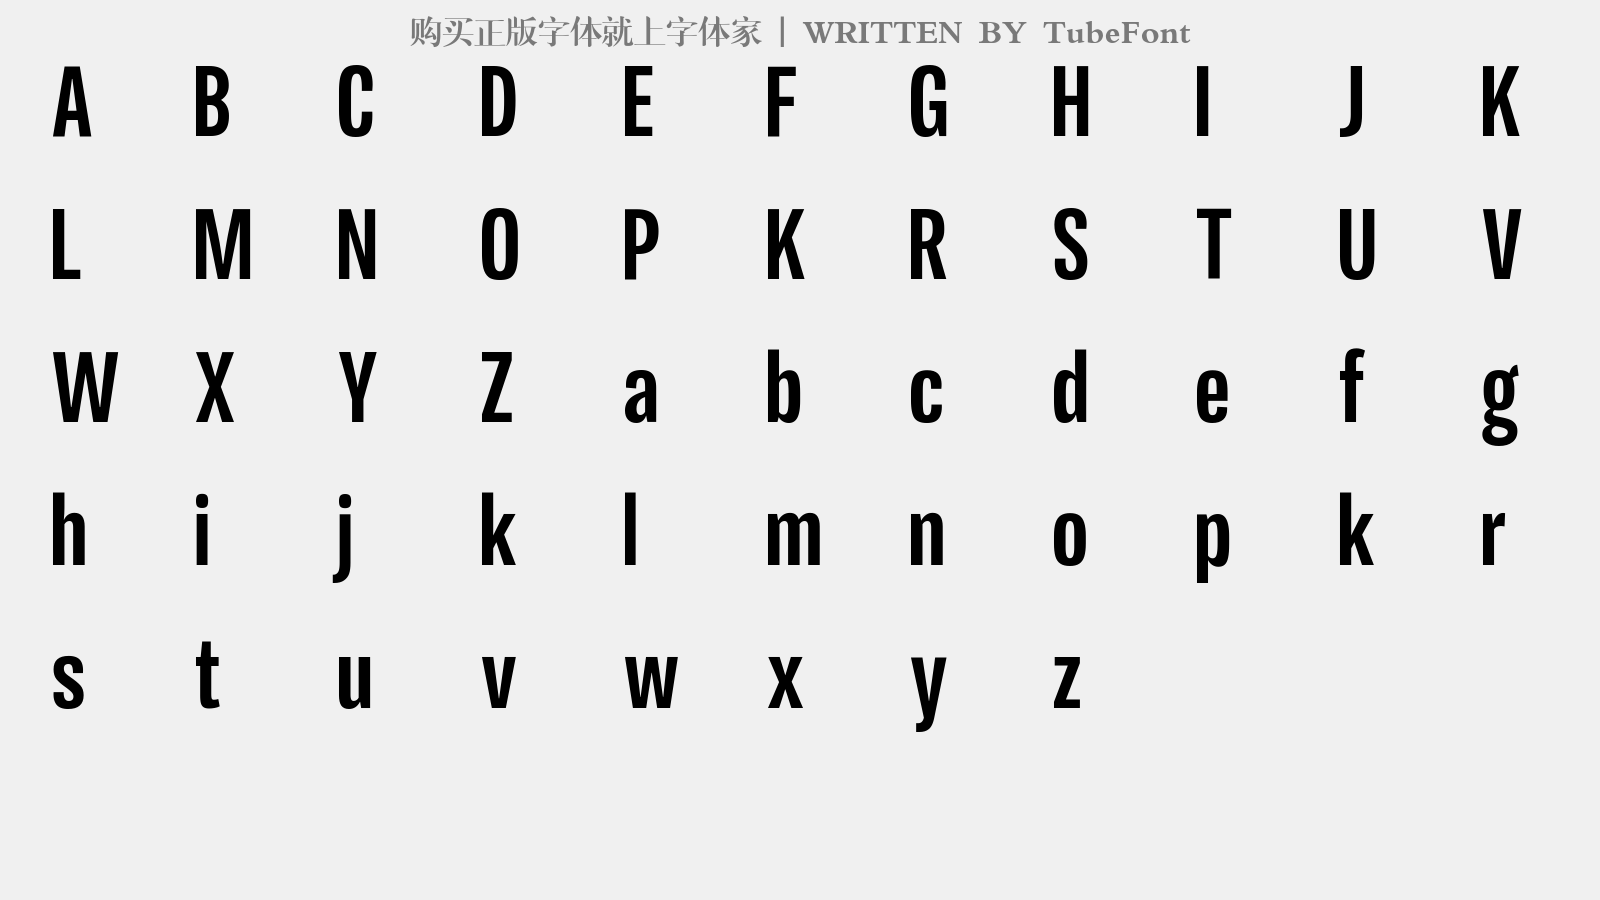 TubeFont - 大写字母/小写字母/数字